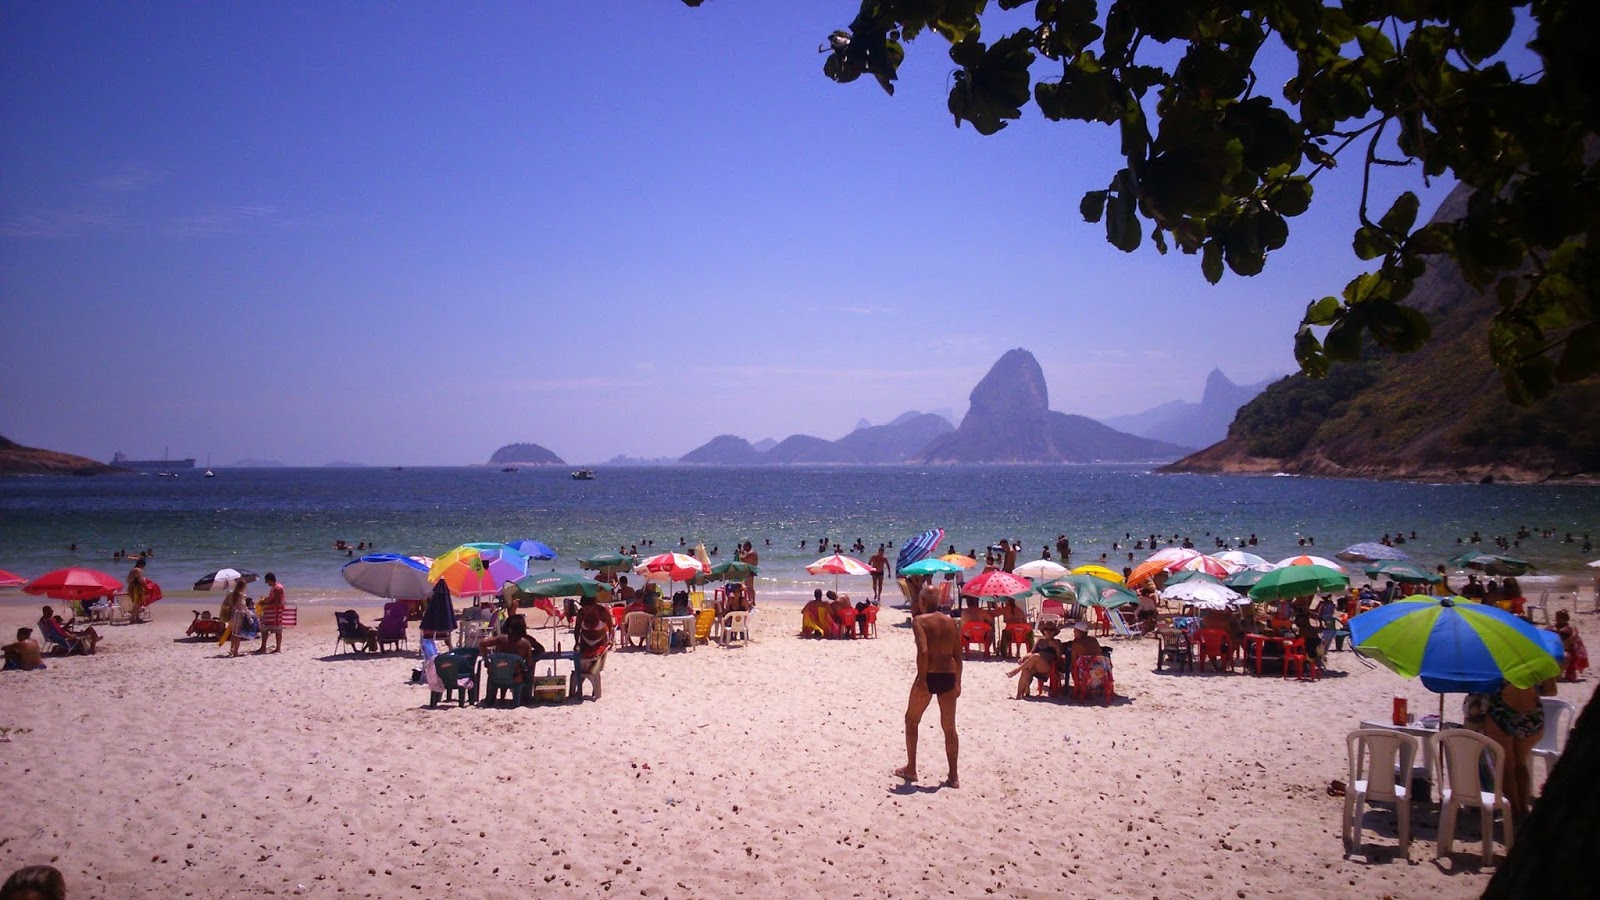 Praia do Forte Rio Branco'in fotoğrafı uçurumlarla desteklenmiş